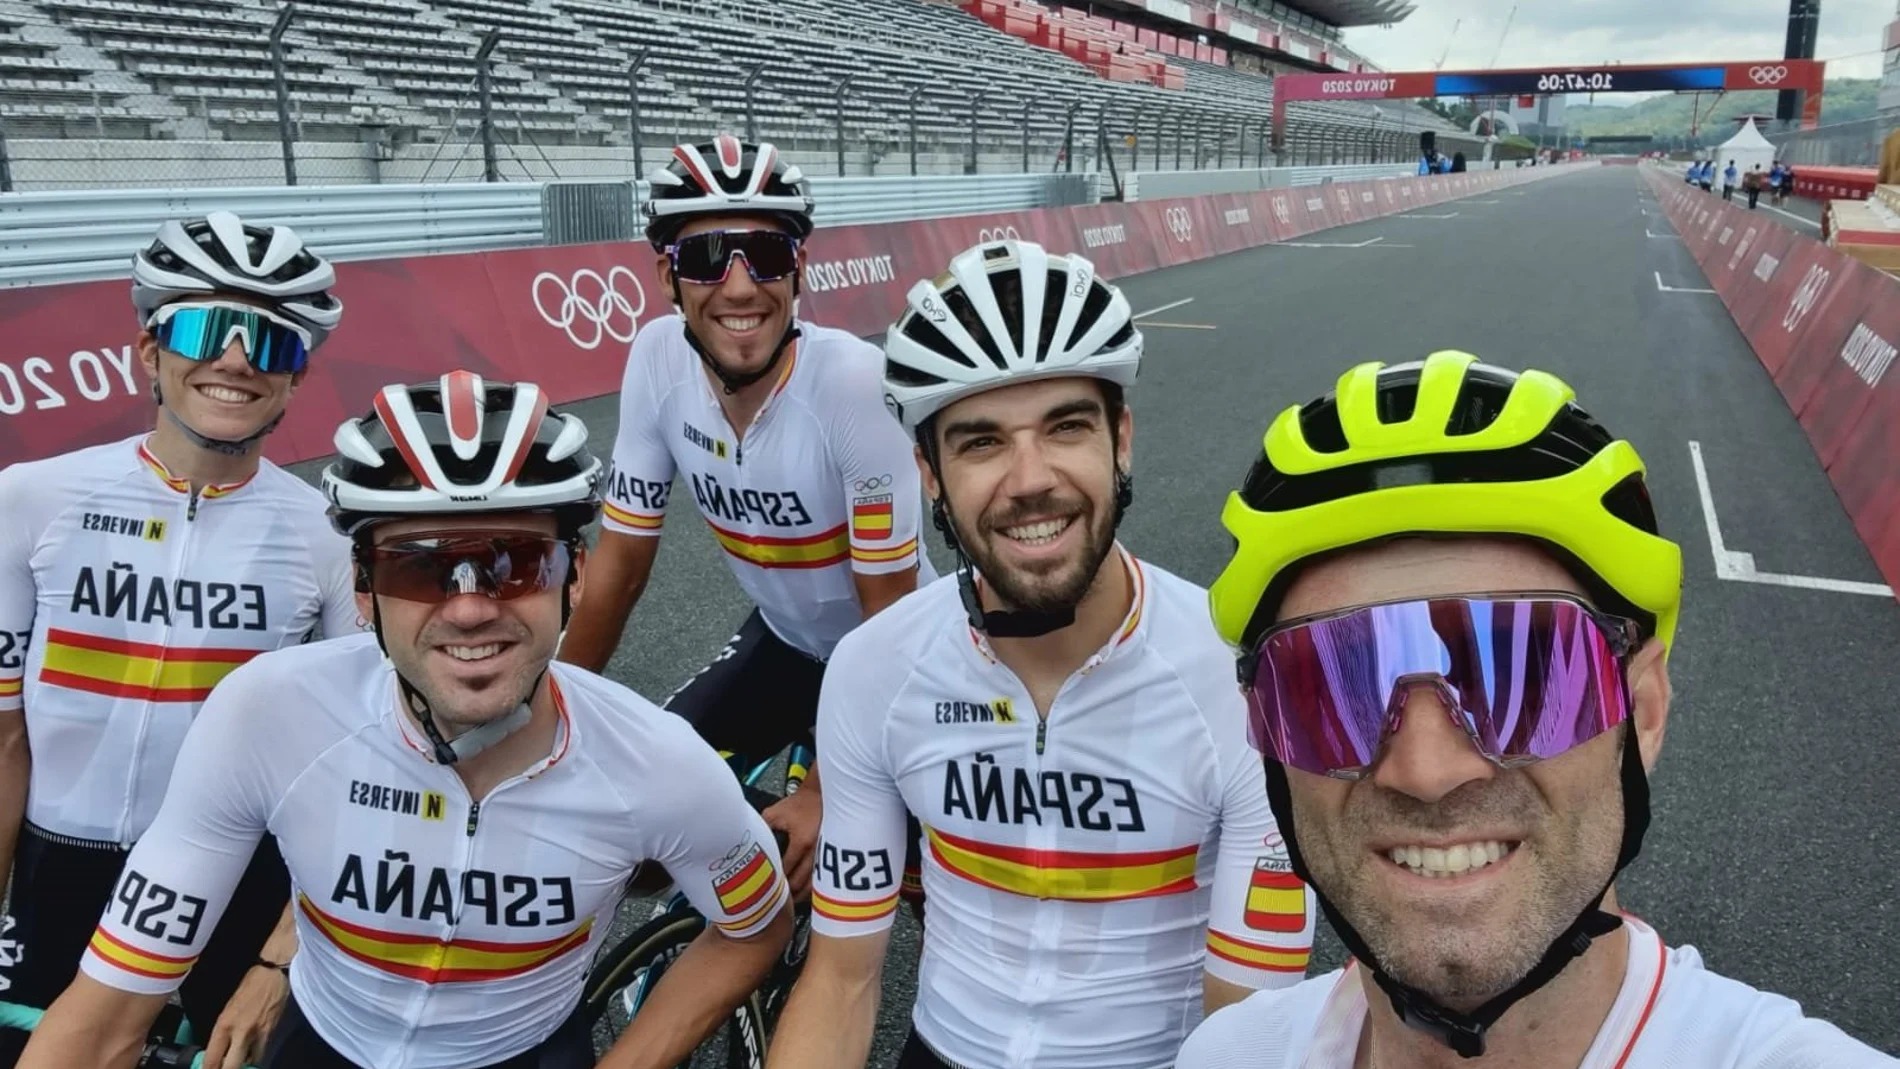 Selección española de ciclismo en Tokio